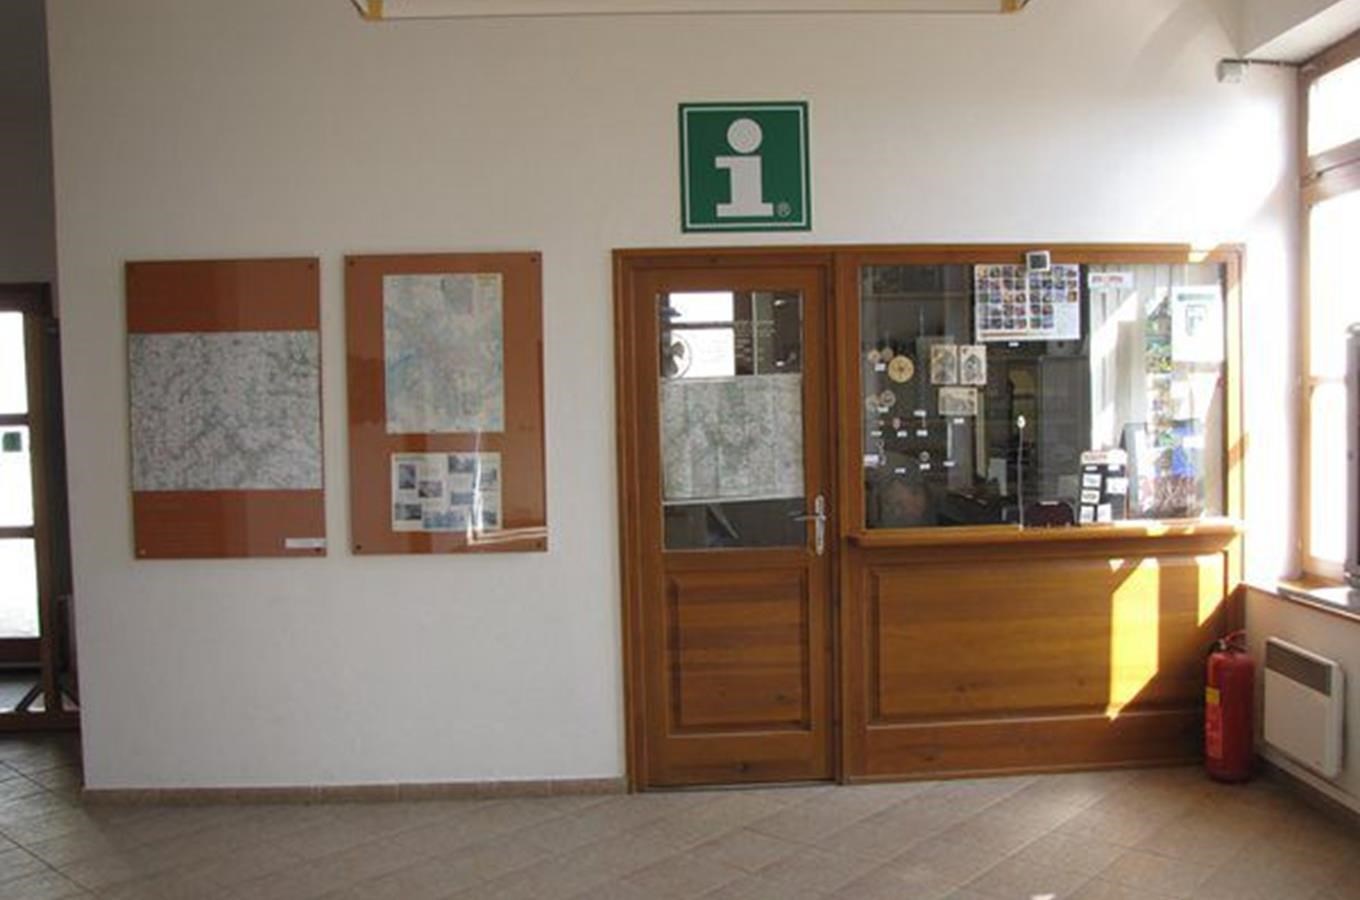 Turistické informační centrum Znojmo - Hradní ul.